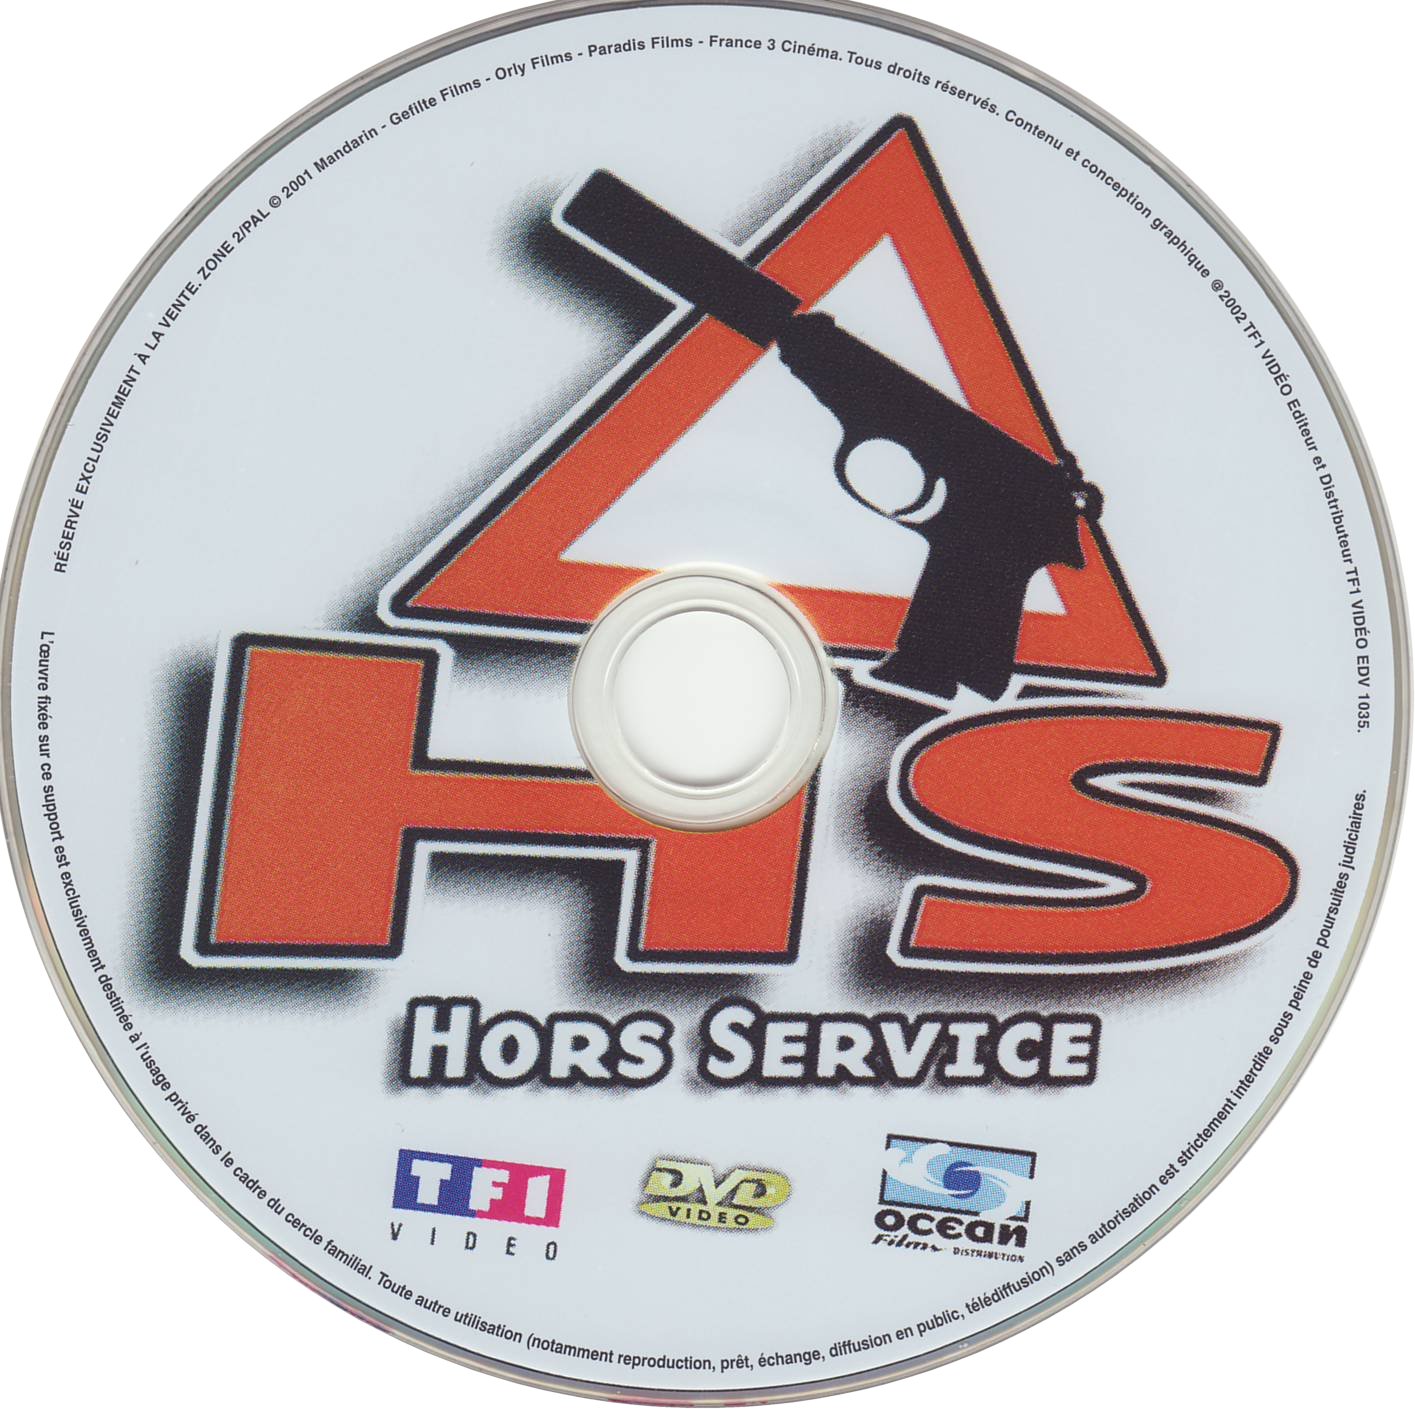 HS Hors service